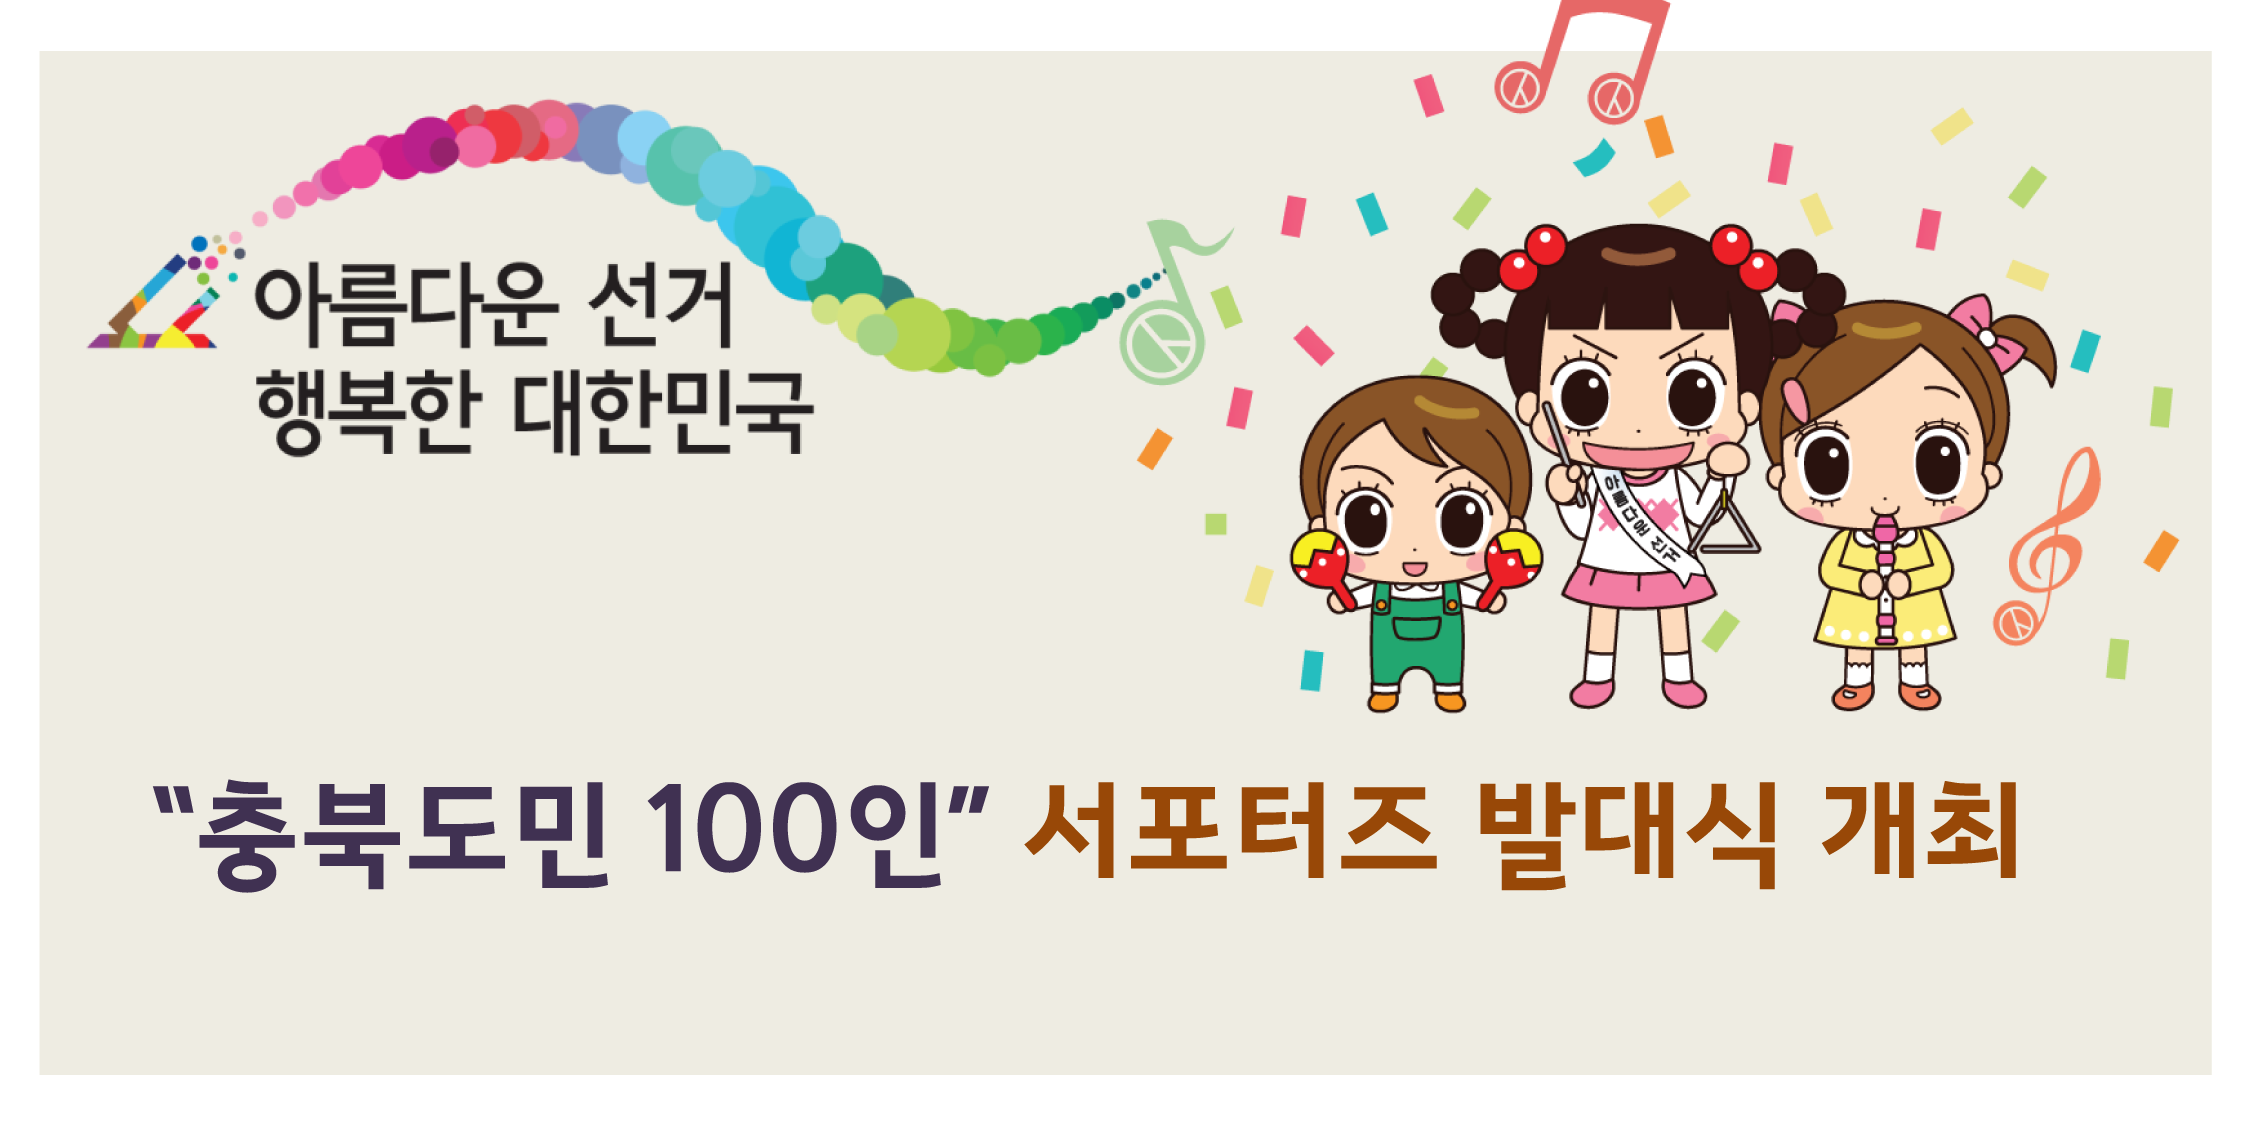 충북도민 100인의 서포터즈 발대식 개최 